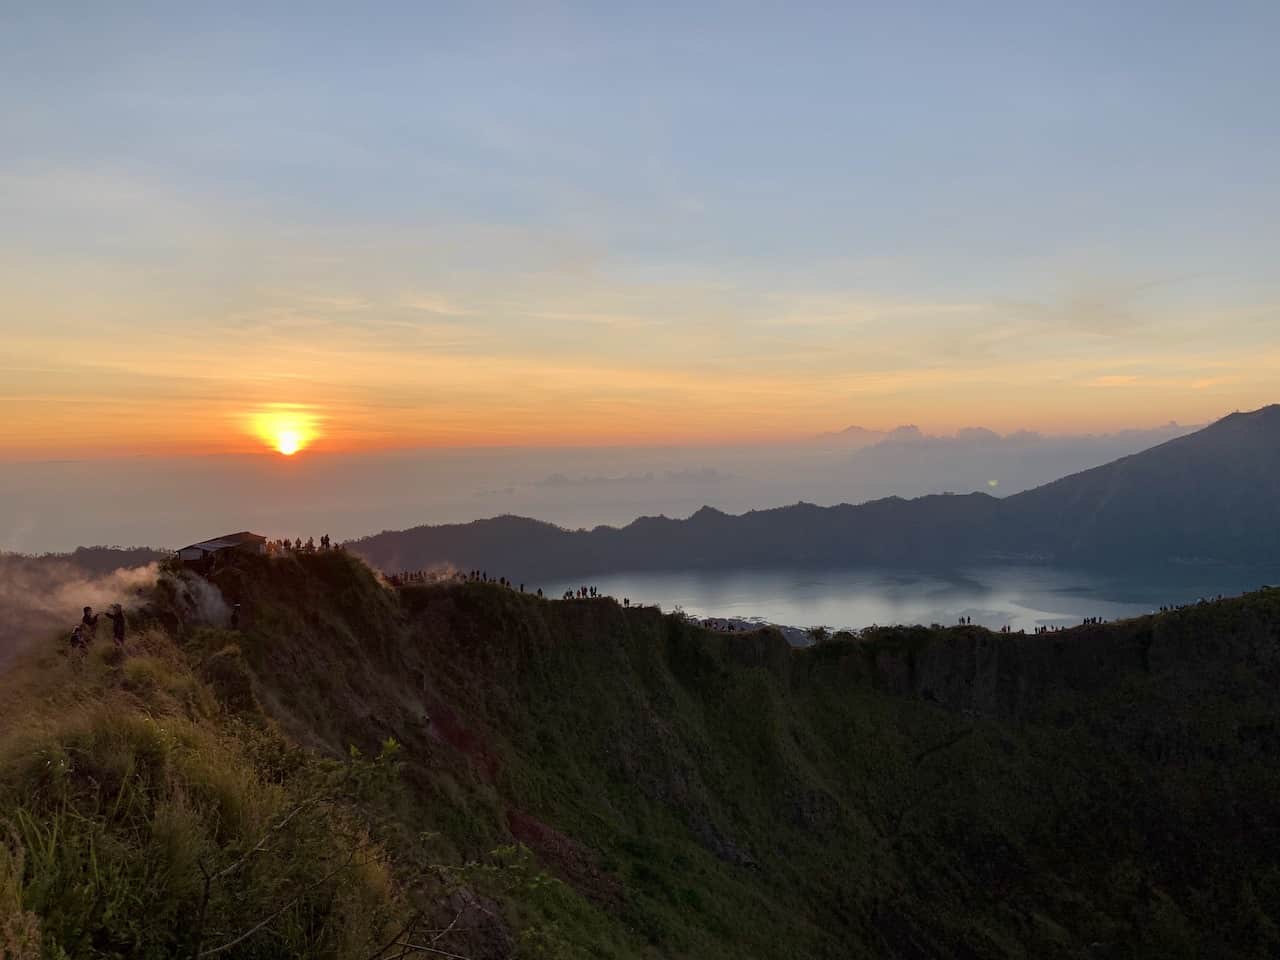 Mount Batur Sunrise Crater Rim